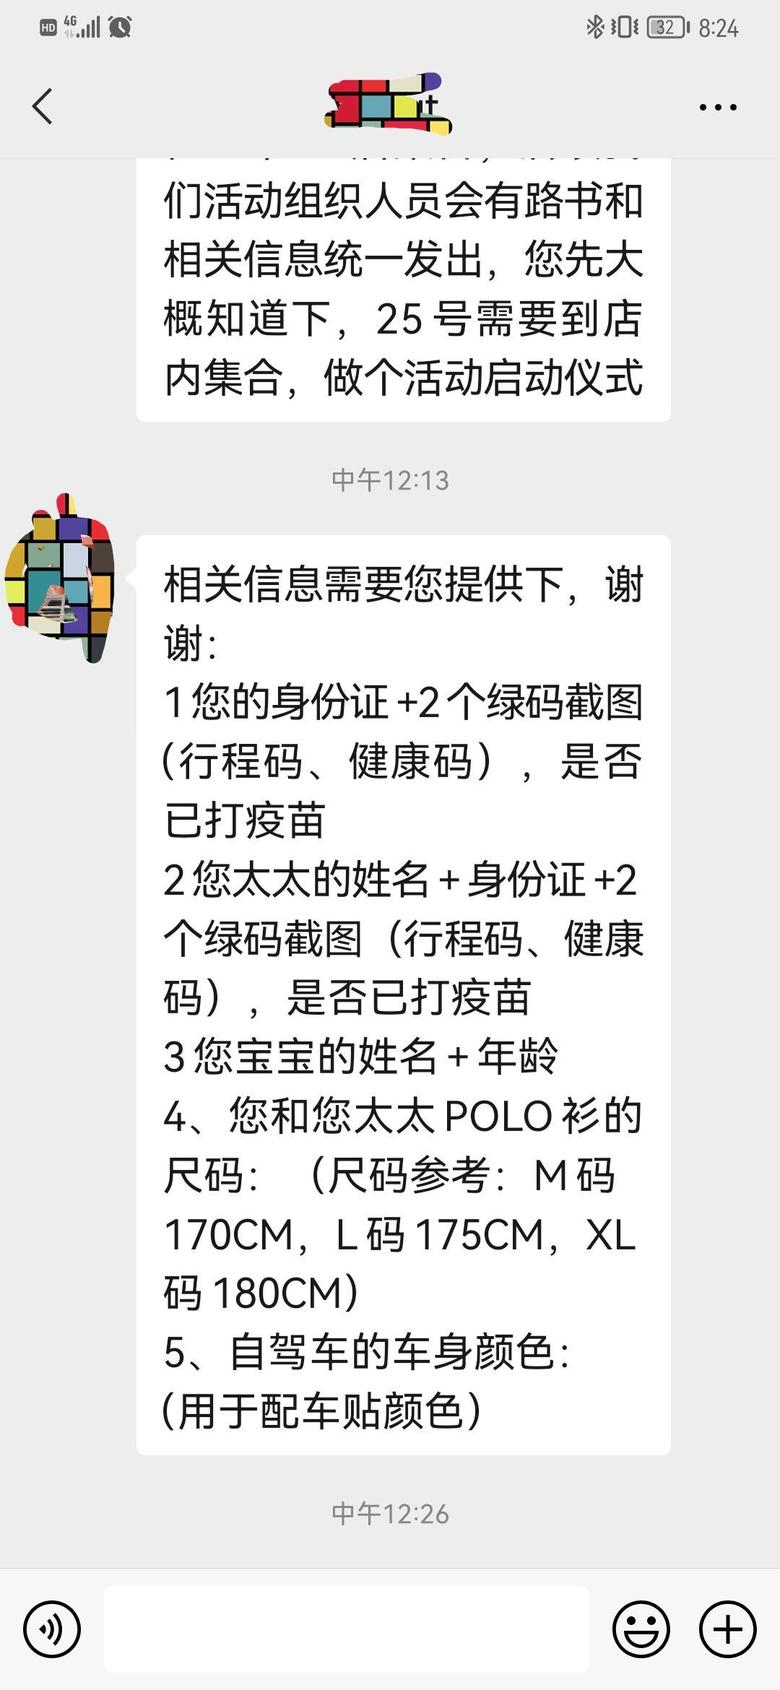 星途凌云今天接到一个上海电话，通知我被选中参加这个自驾游活动，真不错，不知道最终时间能不能ok！